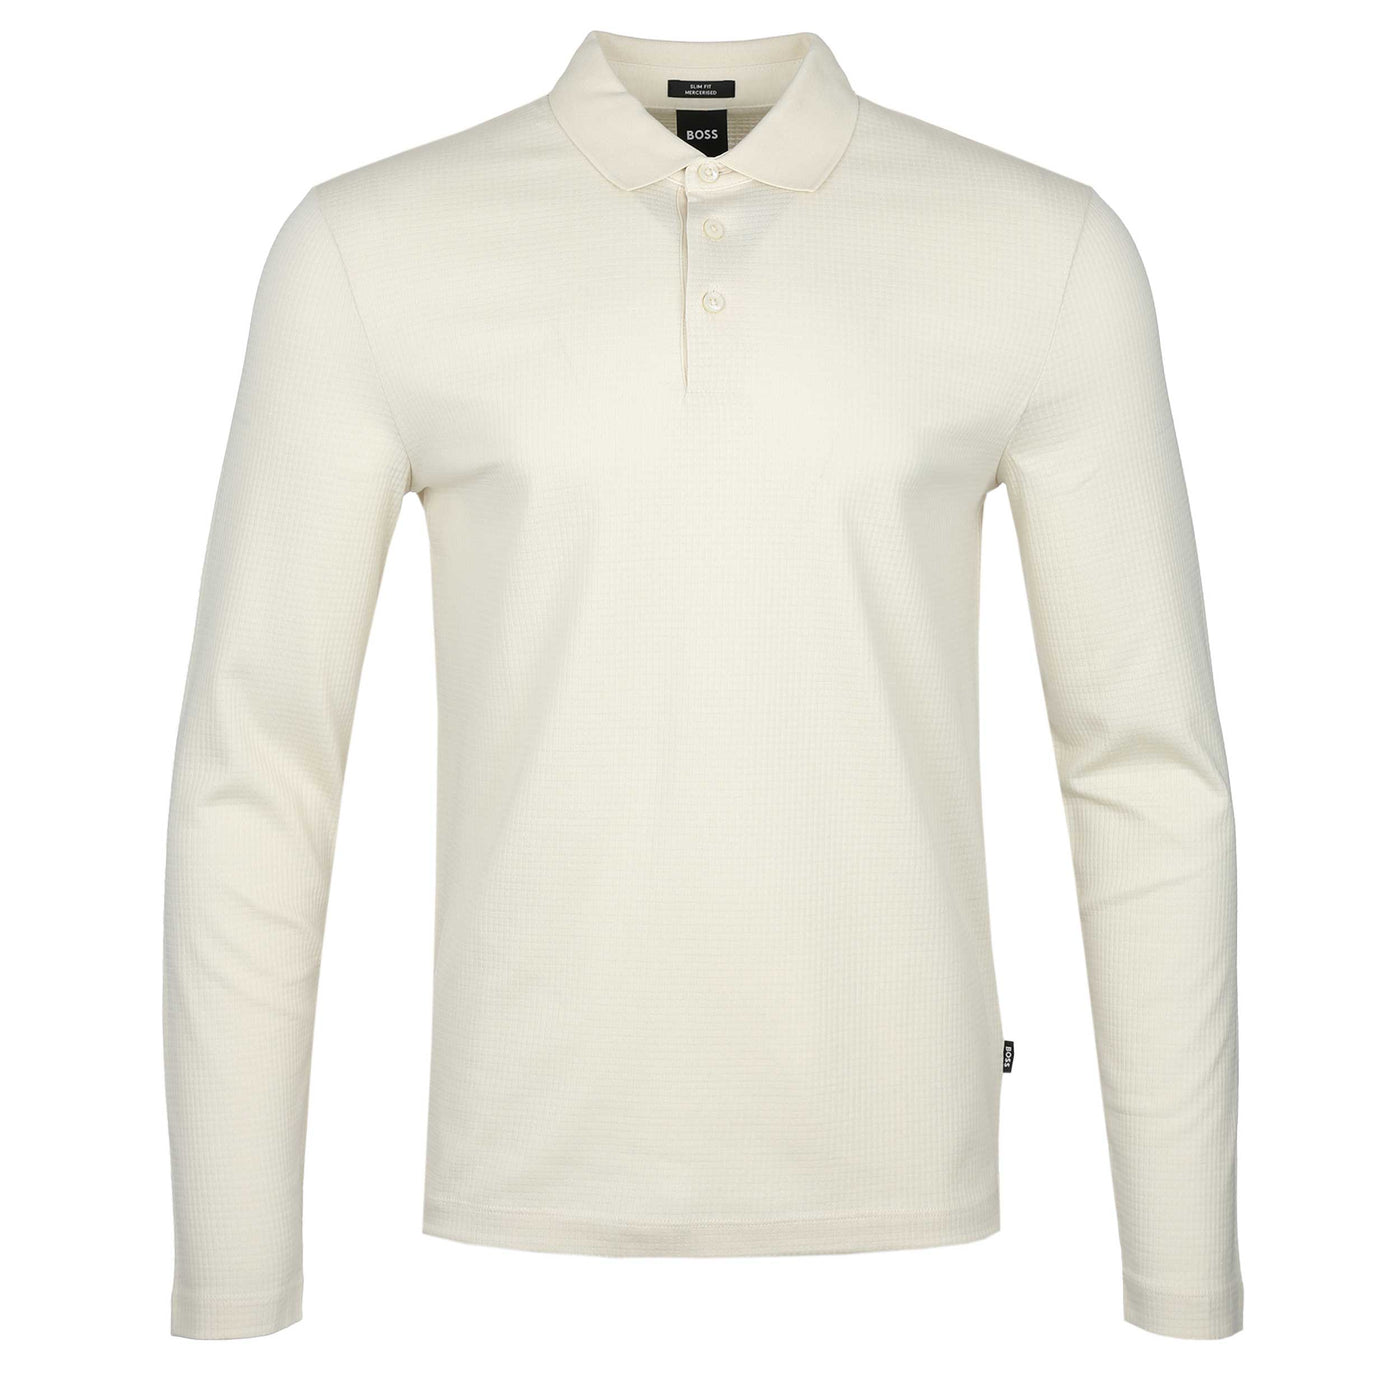 BOSS Pleins 31 LS Polo Shirt in Cream